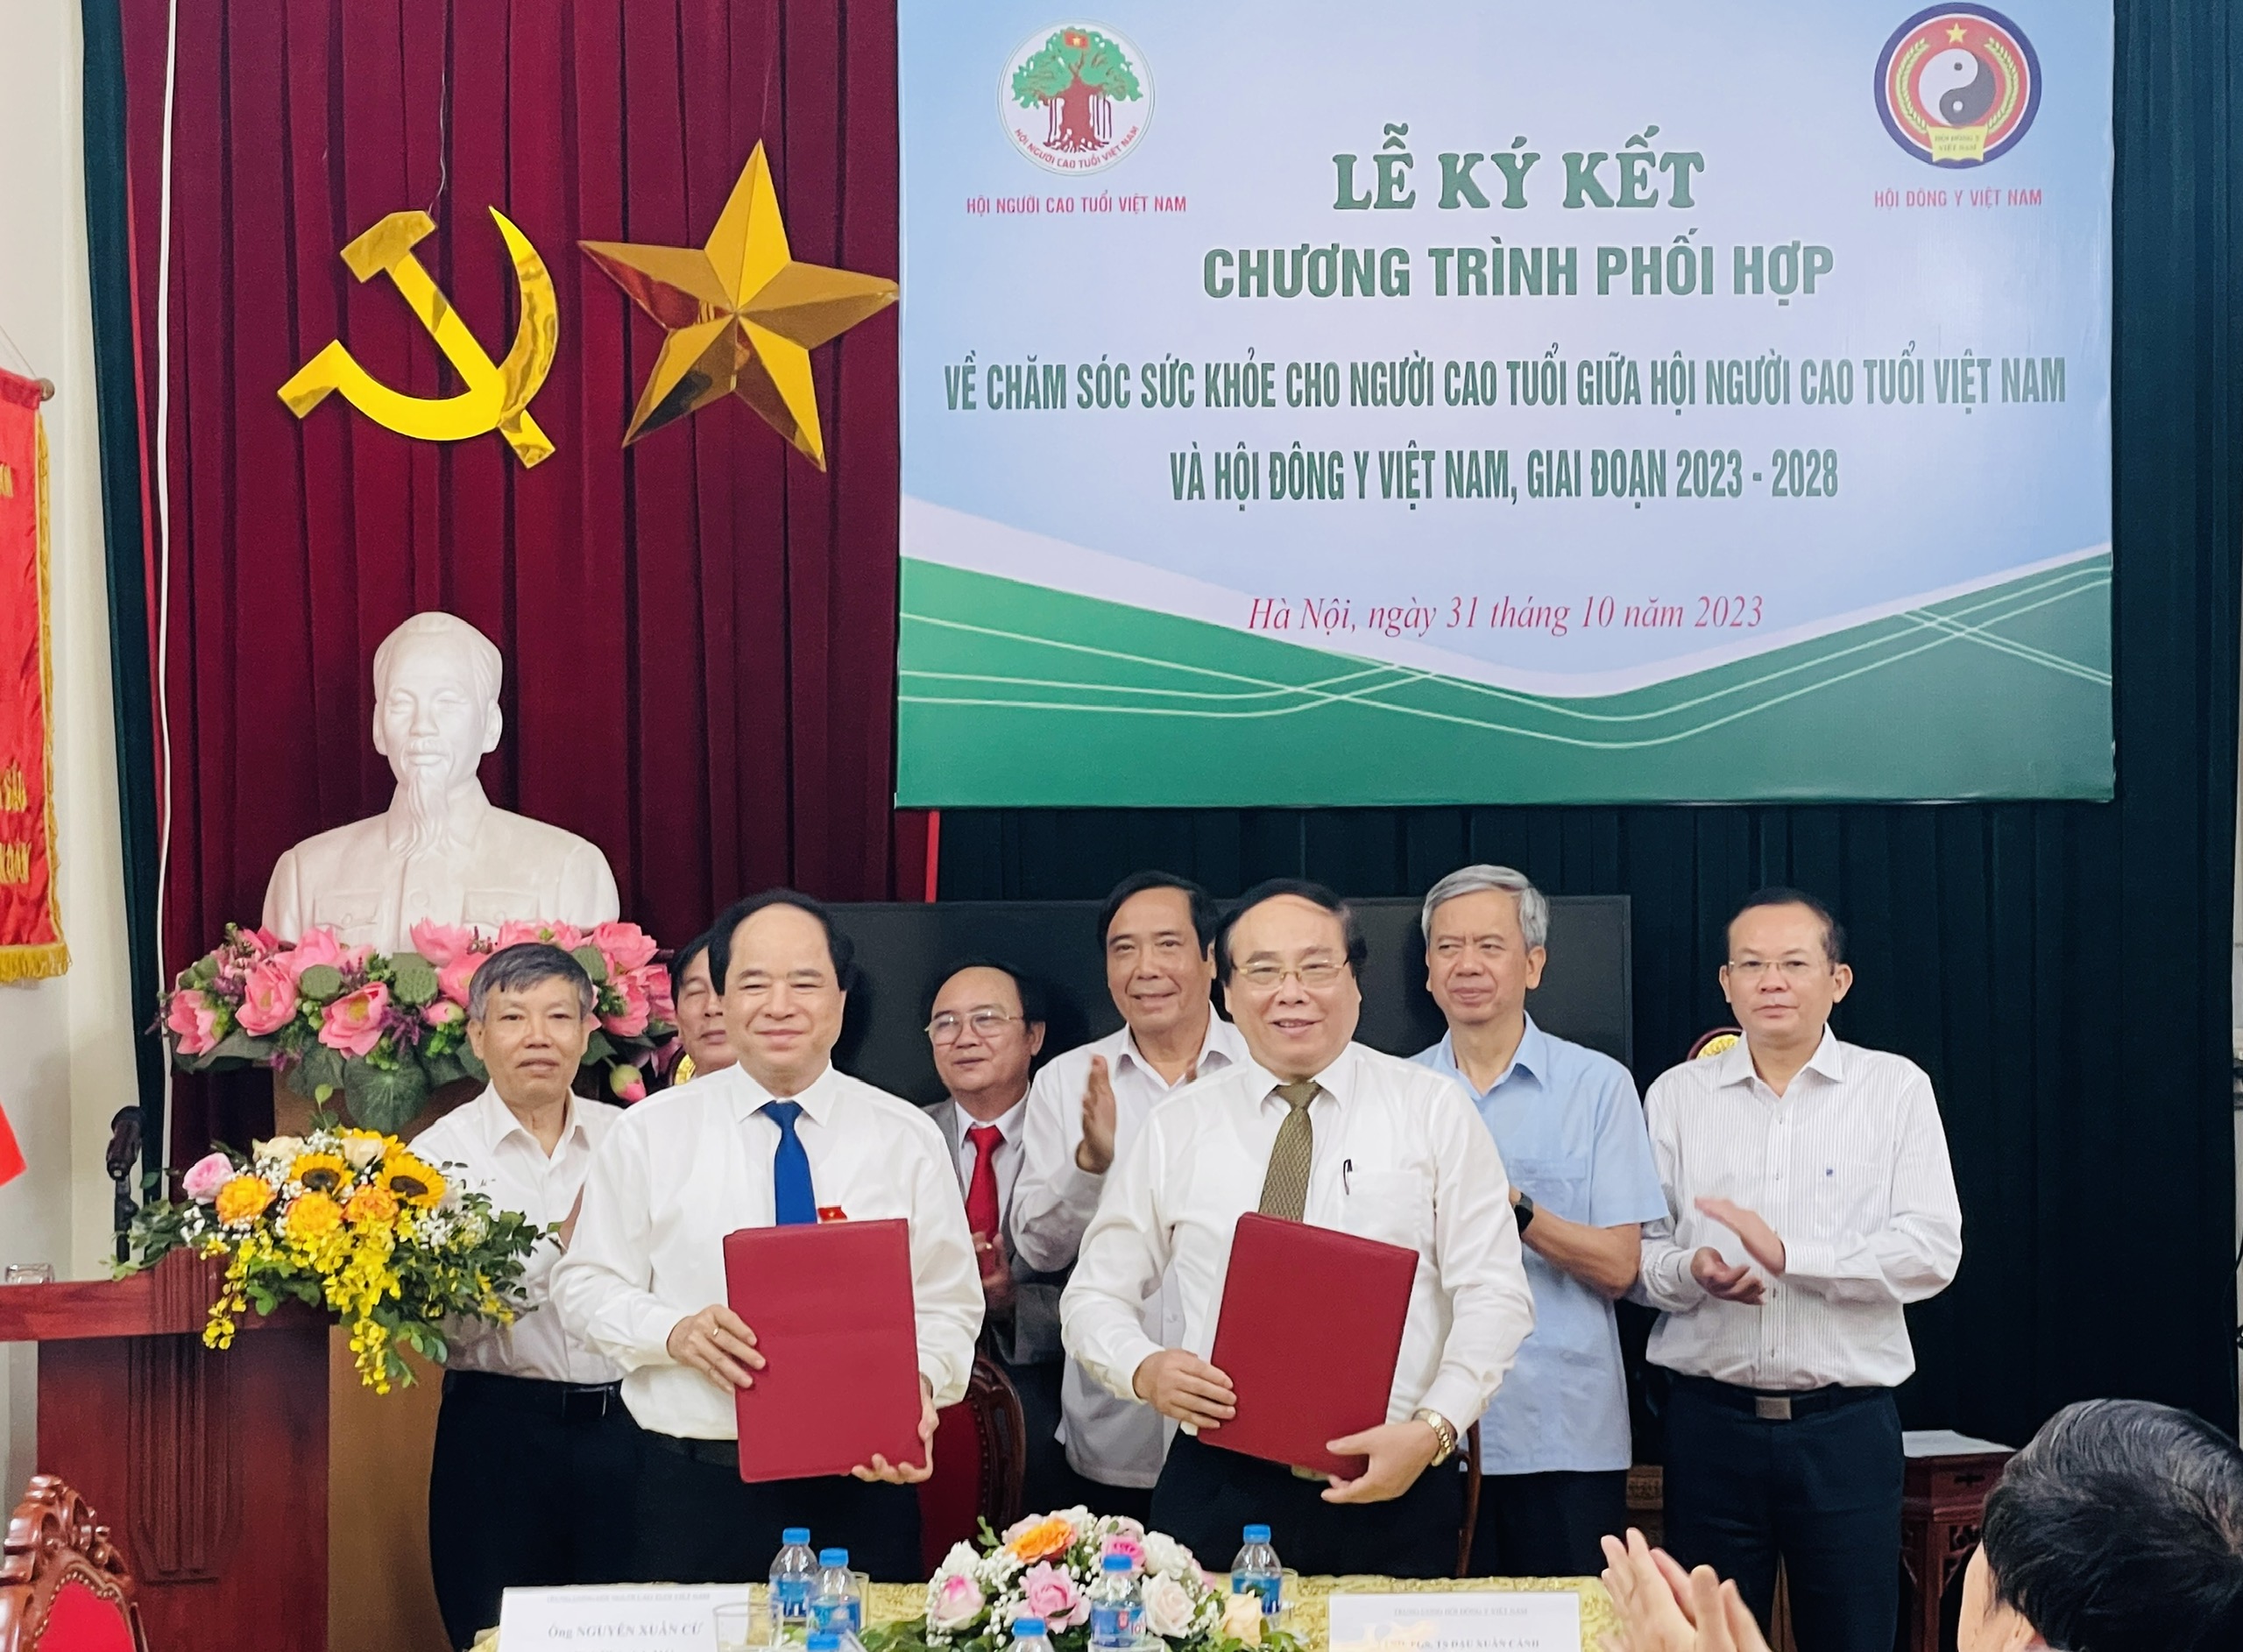 Lễ kí kết hợp tác về chăm sóc sức khỏe cho người cao tuổi giữa Hội Đông y Việt Nam và Hội Người cao tuổi Việt Nam giai đoạn 2023-2028                              